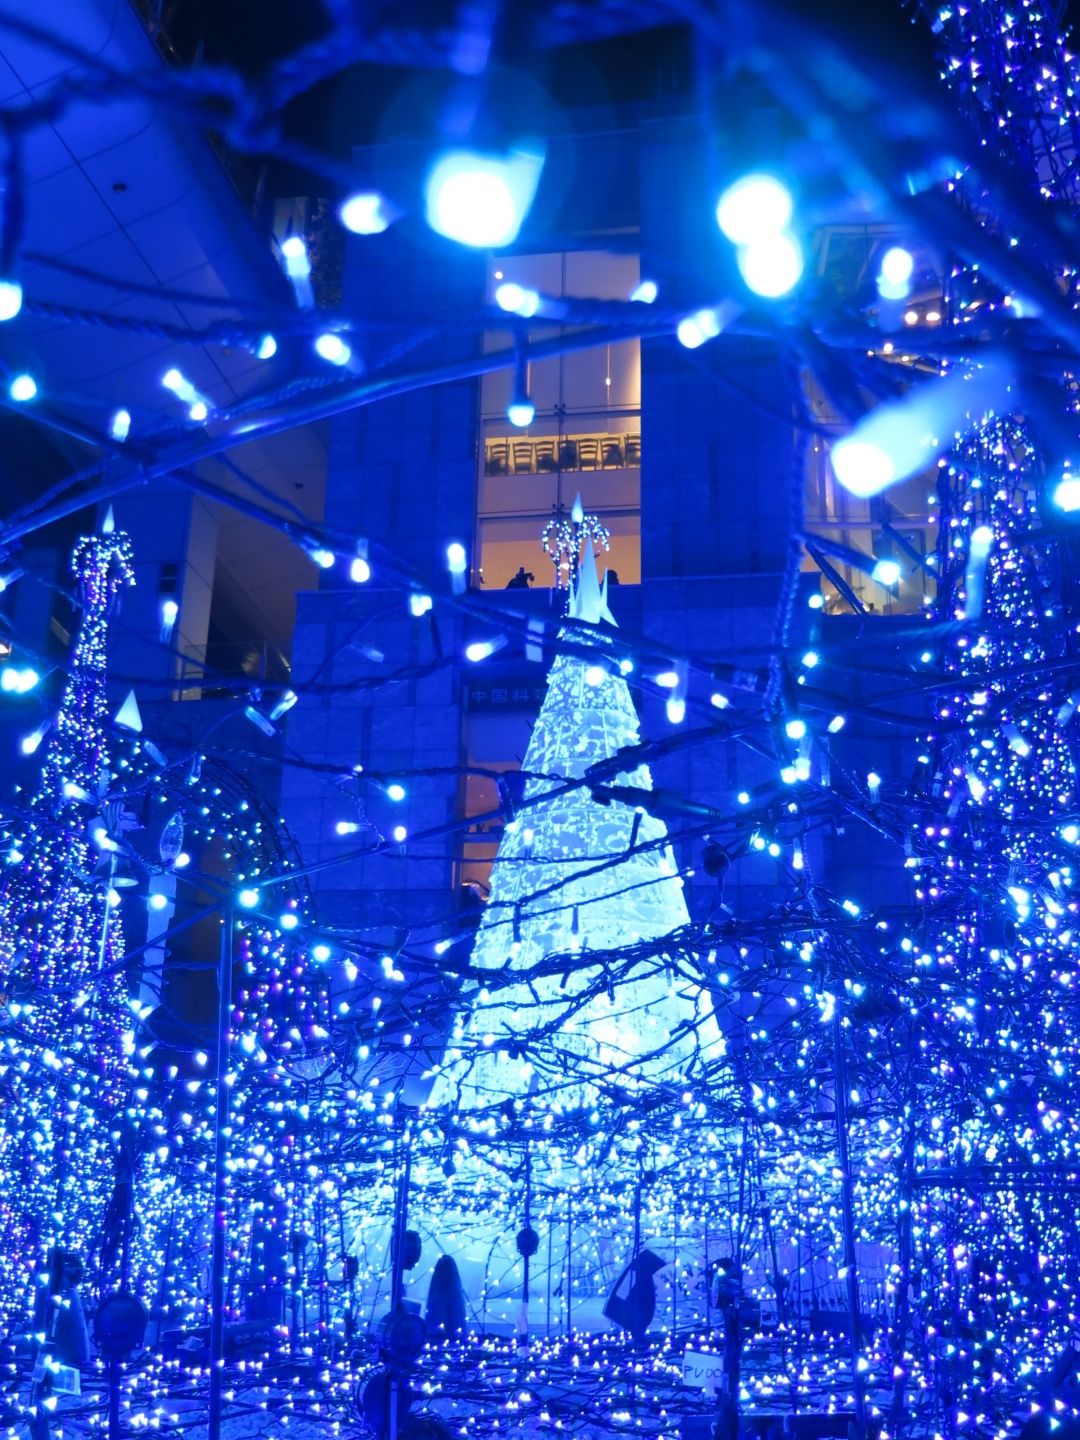 我們恭喜吧友 Zephyr的照片連續兩次獲得小編的青睞，這張拍攝於東京汐留的聖誕燈飾照真的太美啦!